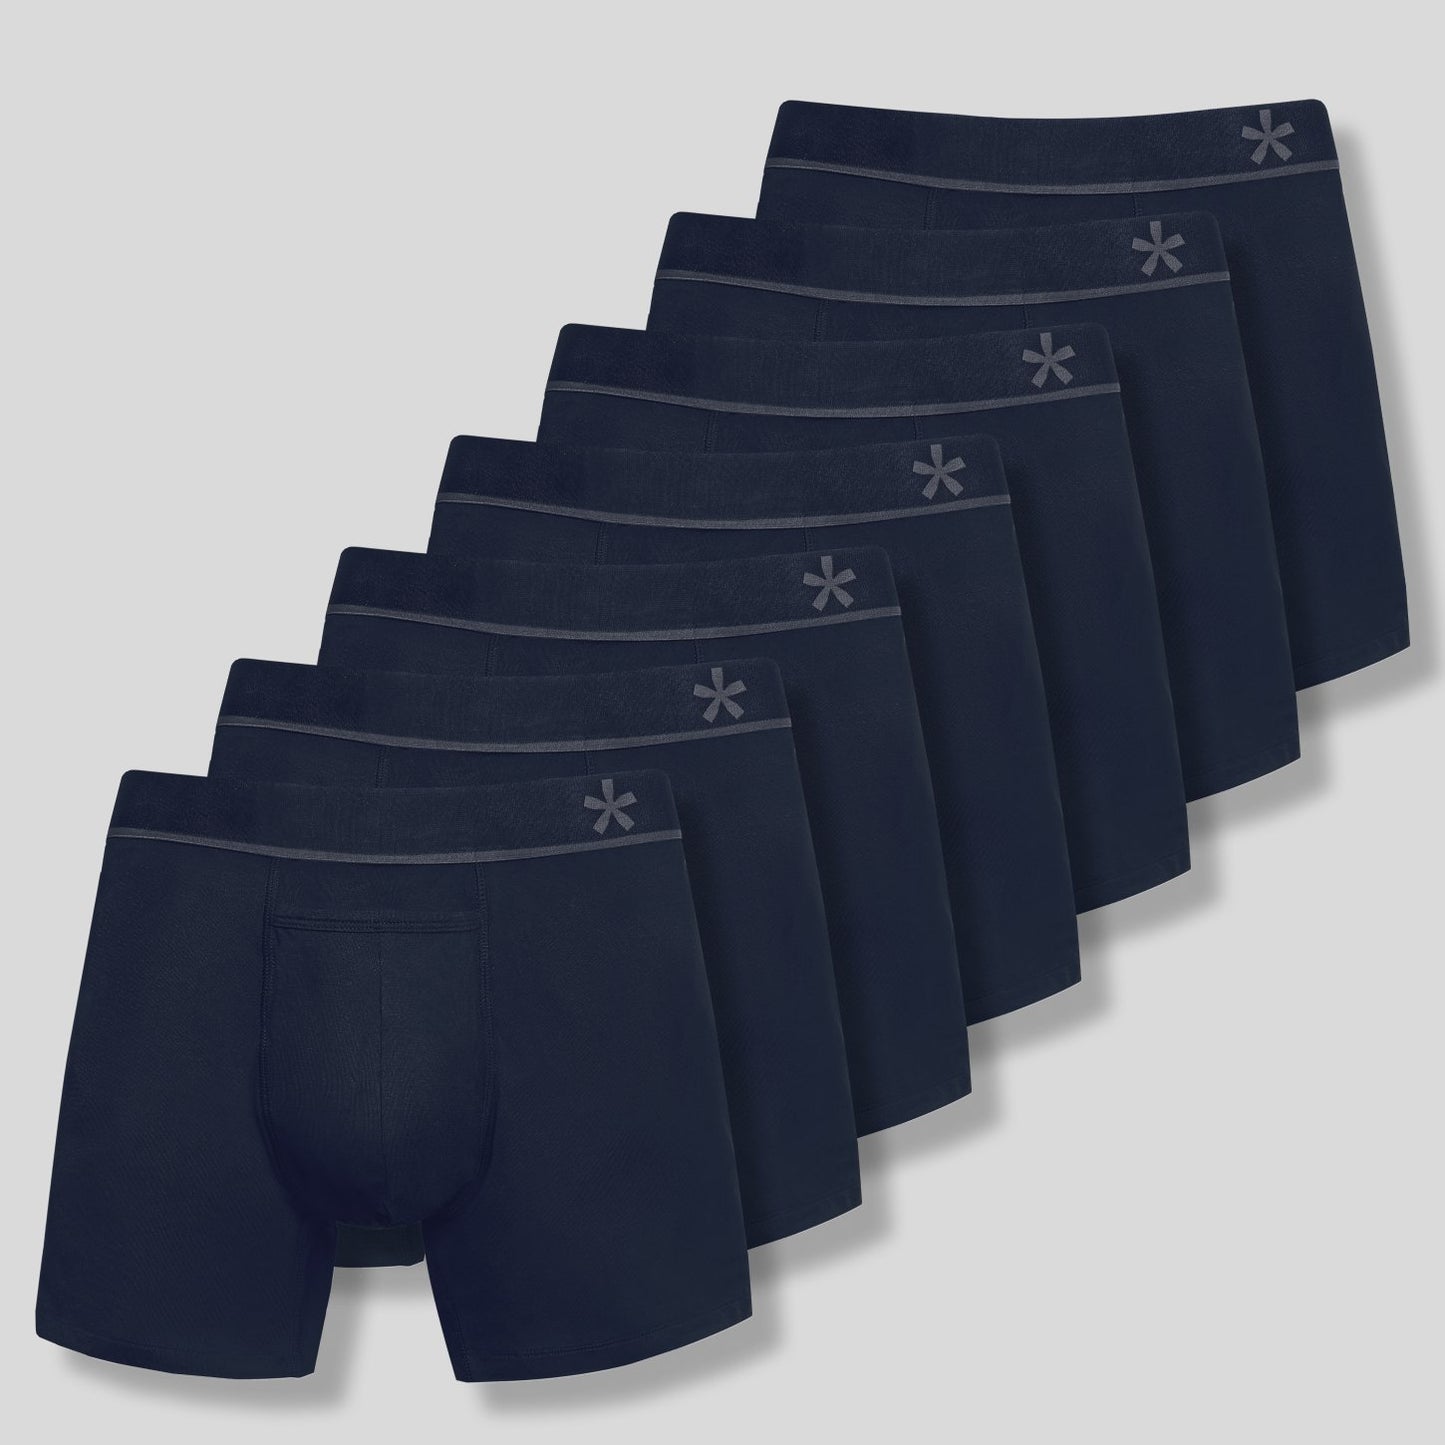 Fashion Men's Premium Boxer Briefs Underwears/Shorts/Boxers 3 In 1 Pack